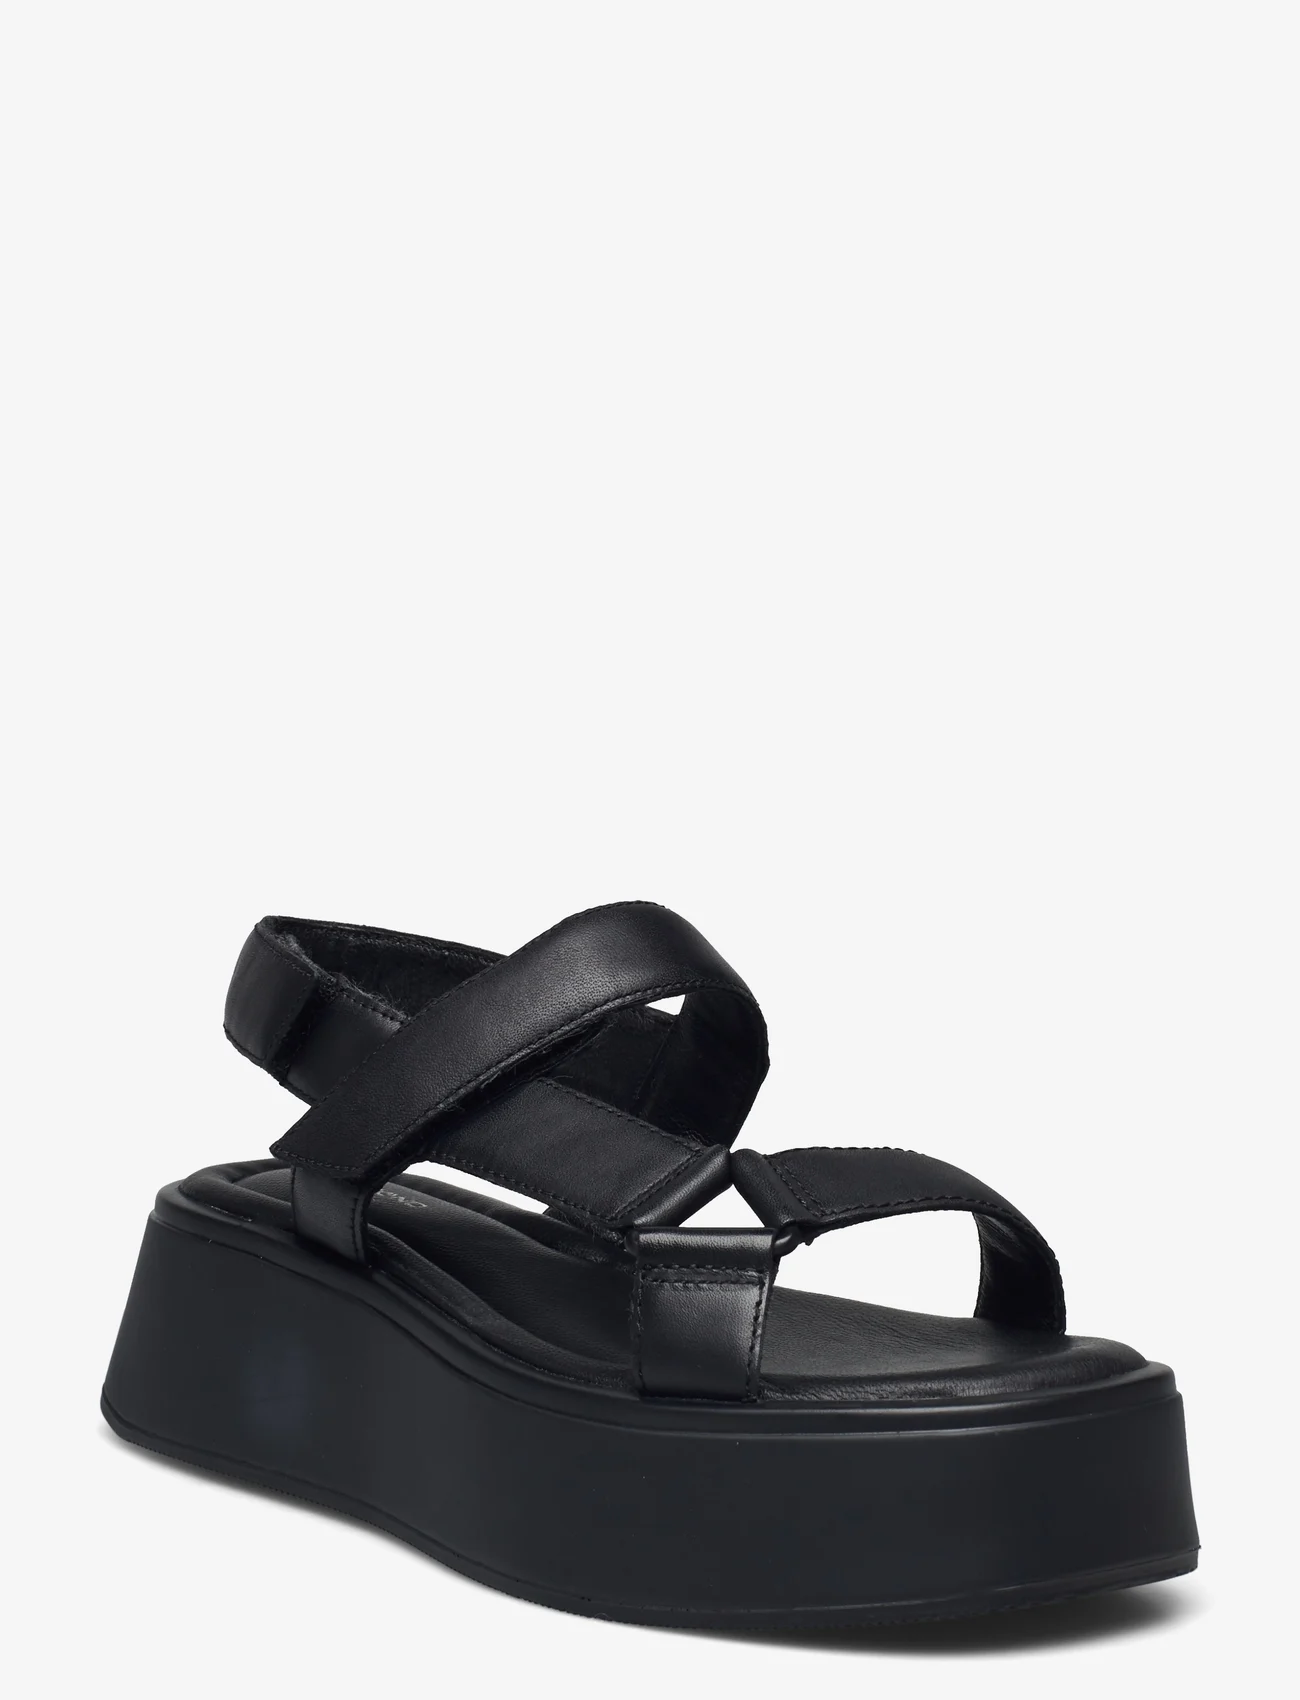 VAGABOND - COURTNEY - sandals - black - 0